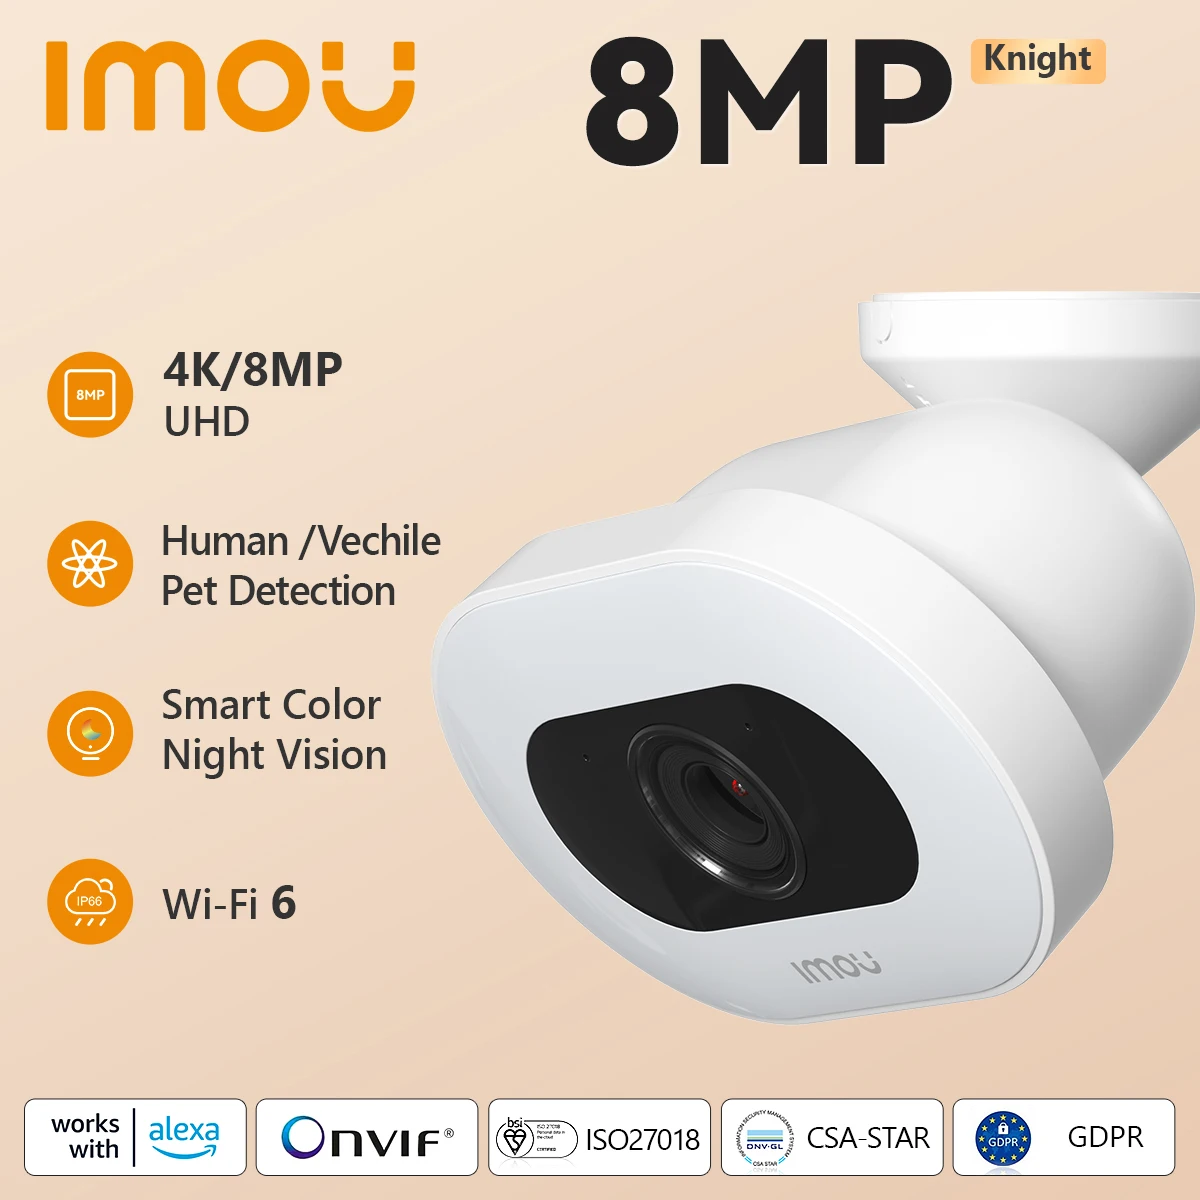 IMOU jezdec 4K UHD 8MP outdoorové záruka WIFI CCTV pozorování kamera ai-based person/vehicle/pet detekce